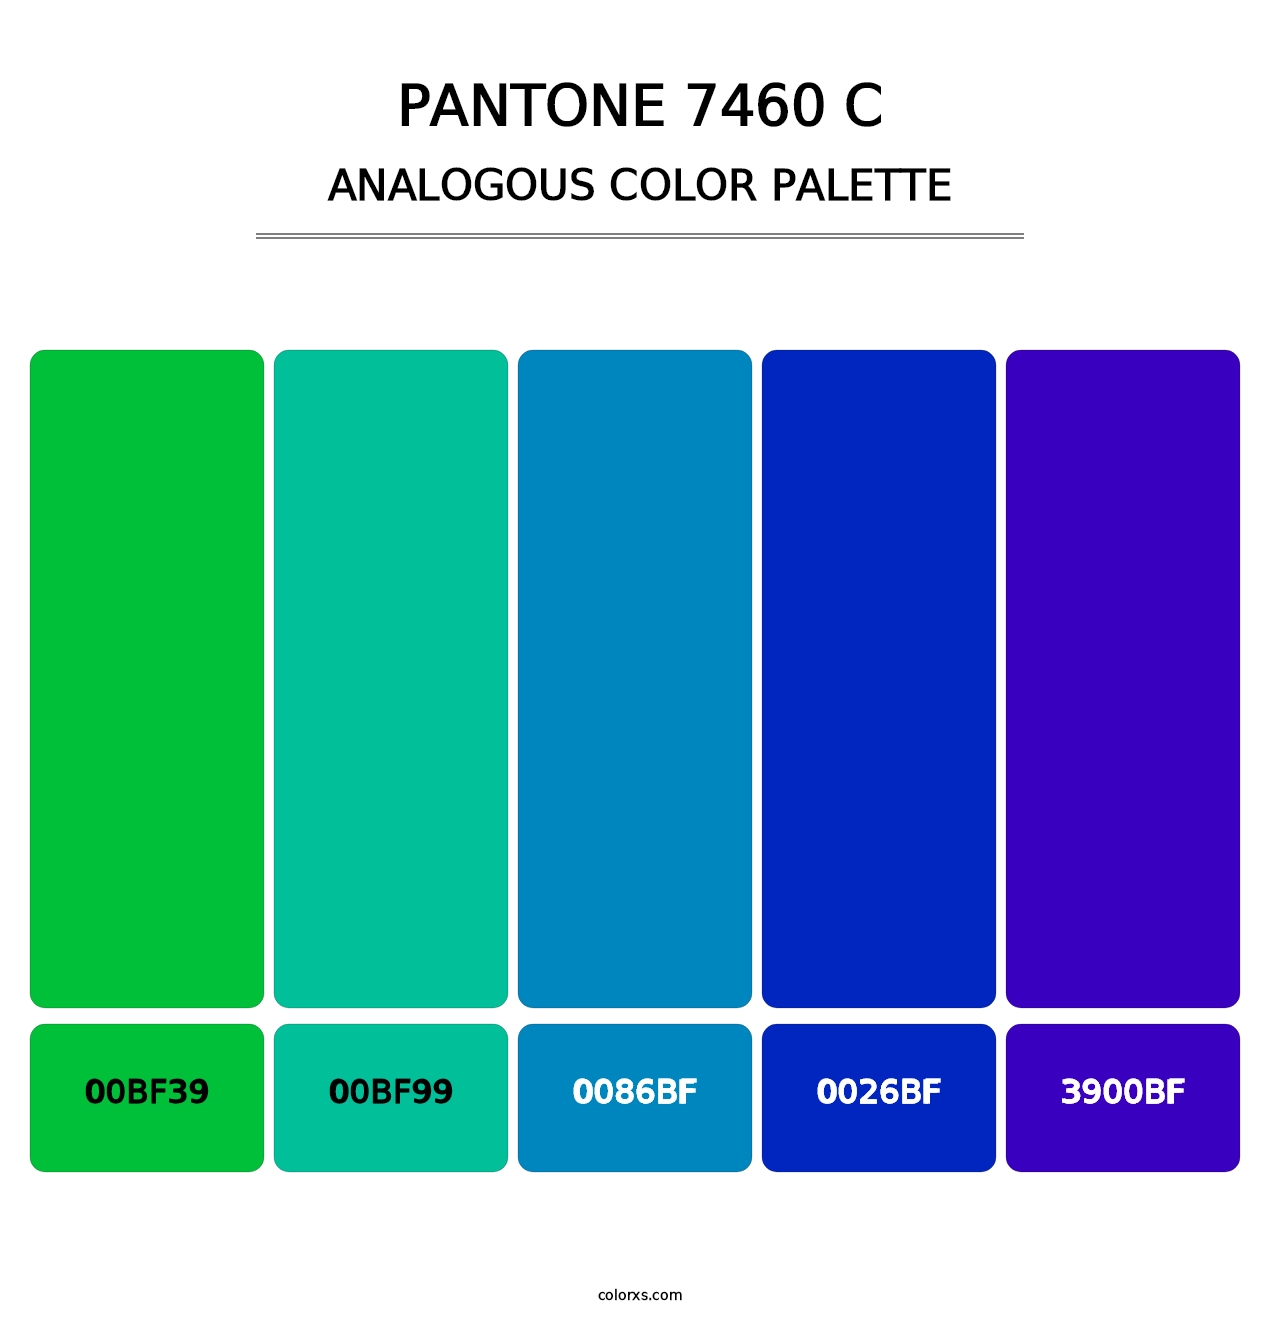 PANTONE 7460 C - Analogous Color Palette